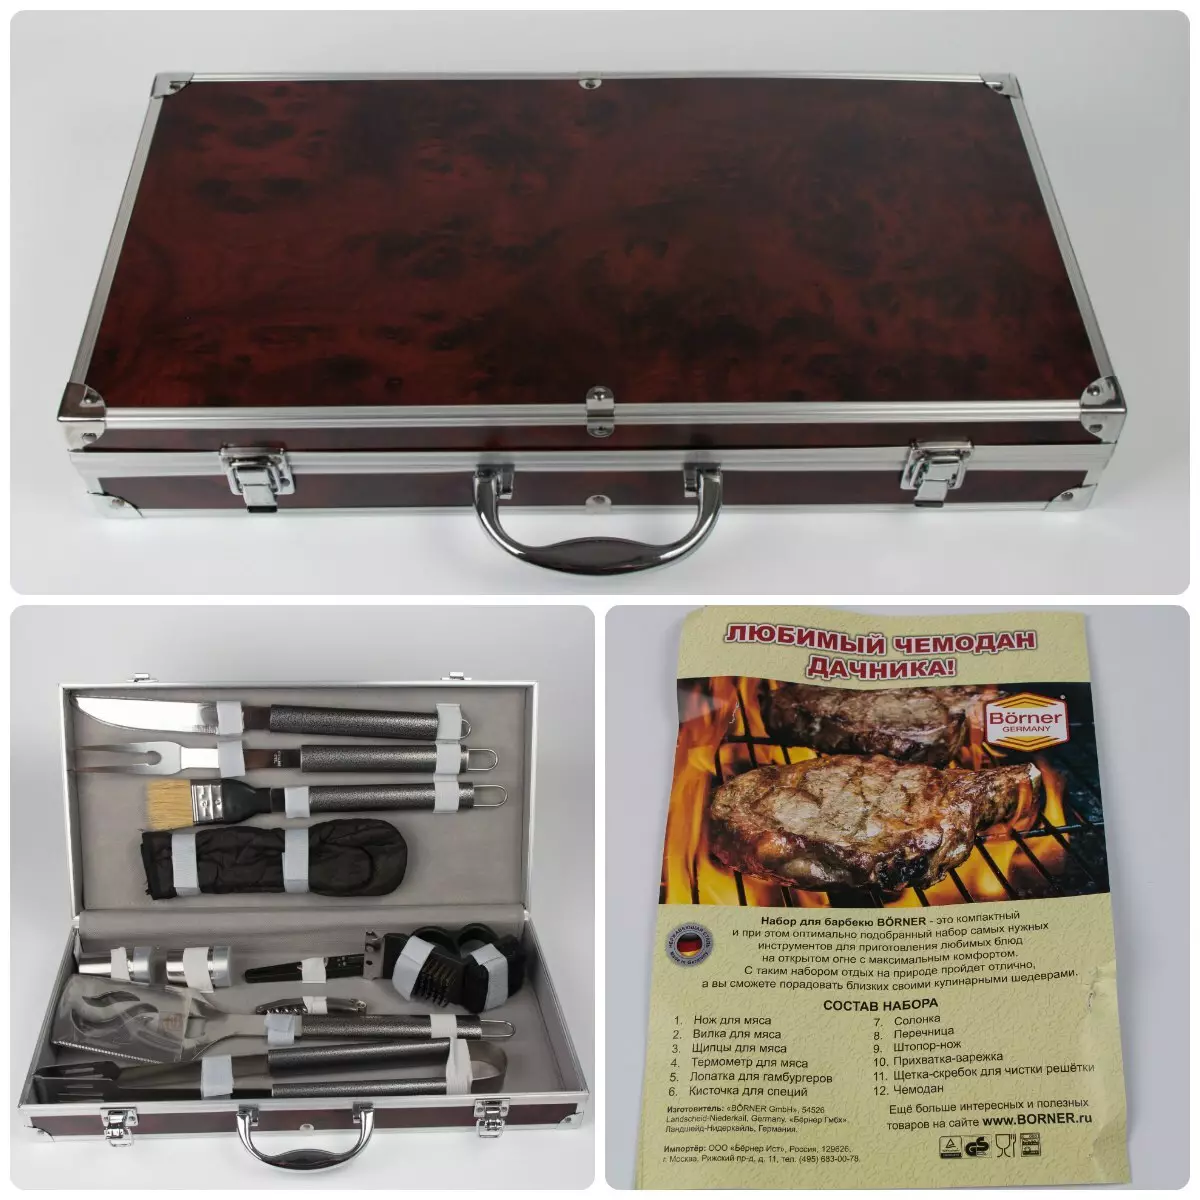 Barbecue Set: Kaddoe passen mat Barbecue a Grill Tools, Fäll mat Accessoiren fir Kebabs a Megalov 24972_26